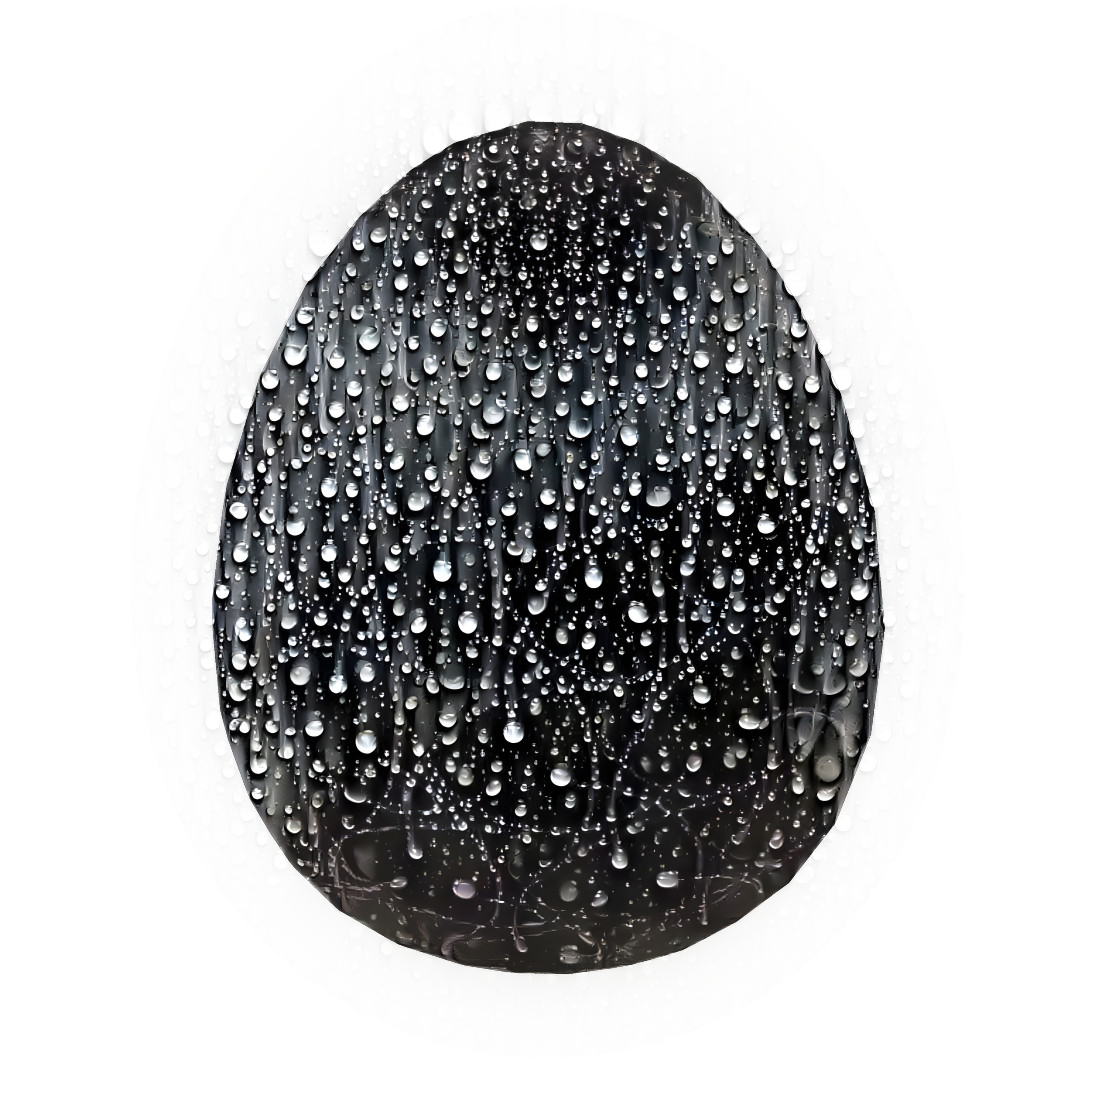 Wet egg